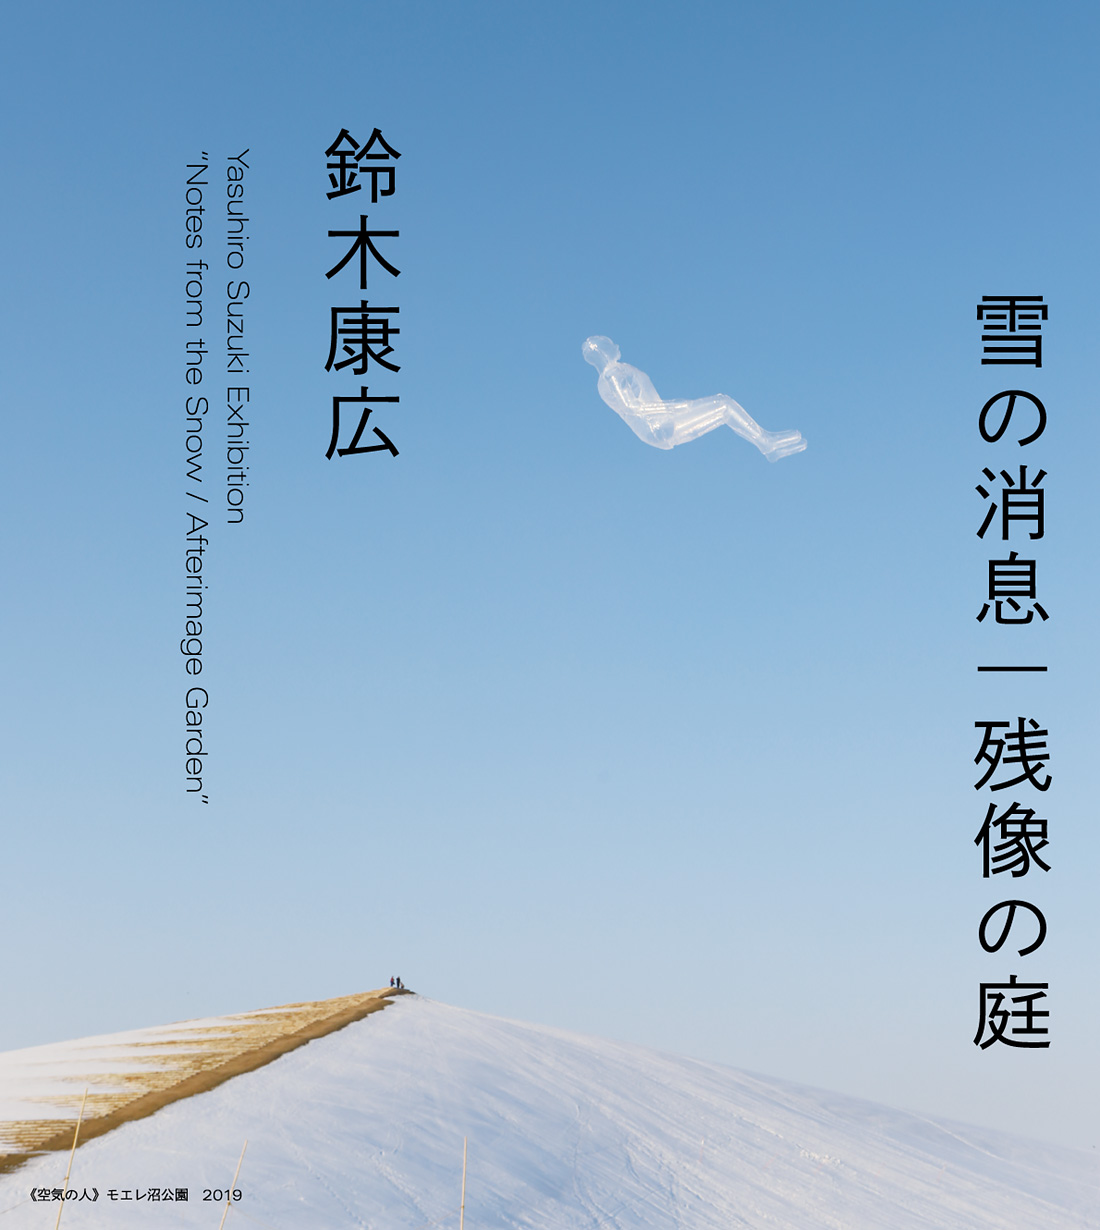 鈴木康広 雪の消息 残像の庭 札幌市民交流プラザ